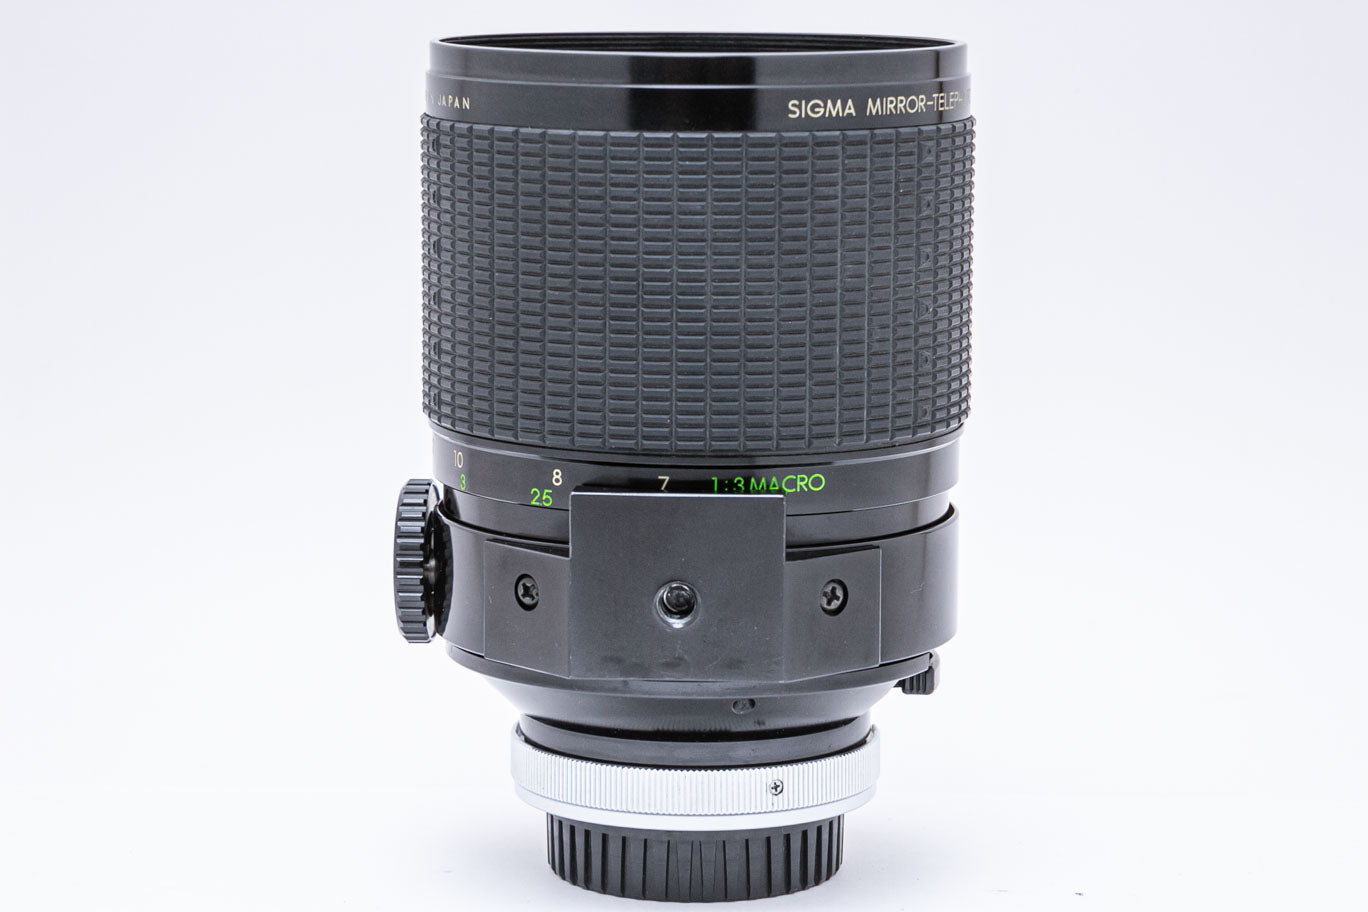 美品 SIGMA MIRROR-TELEPHOTO 600mm F8画像を参照の上御入札下さい